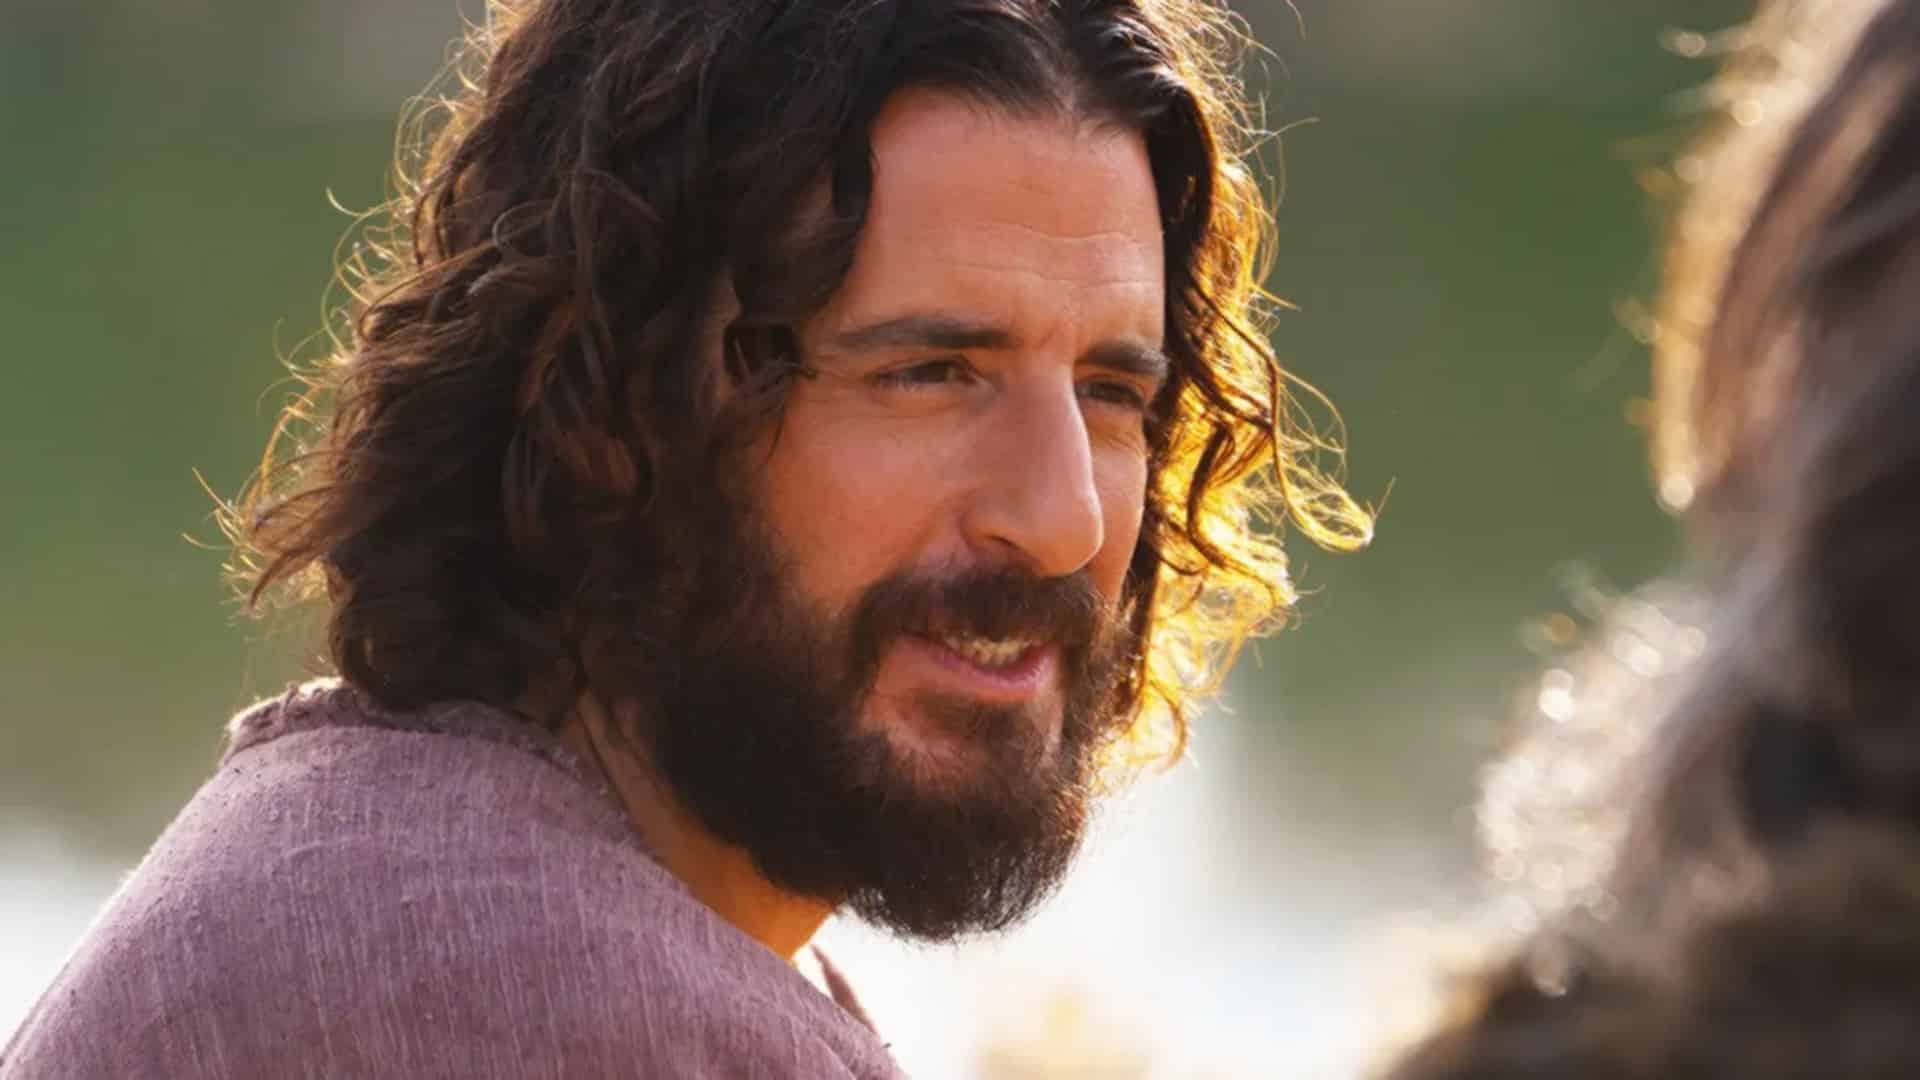 Foto do personagem Jesus Cristo na série The Chosen - Os Escolhidos